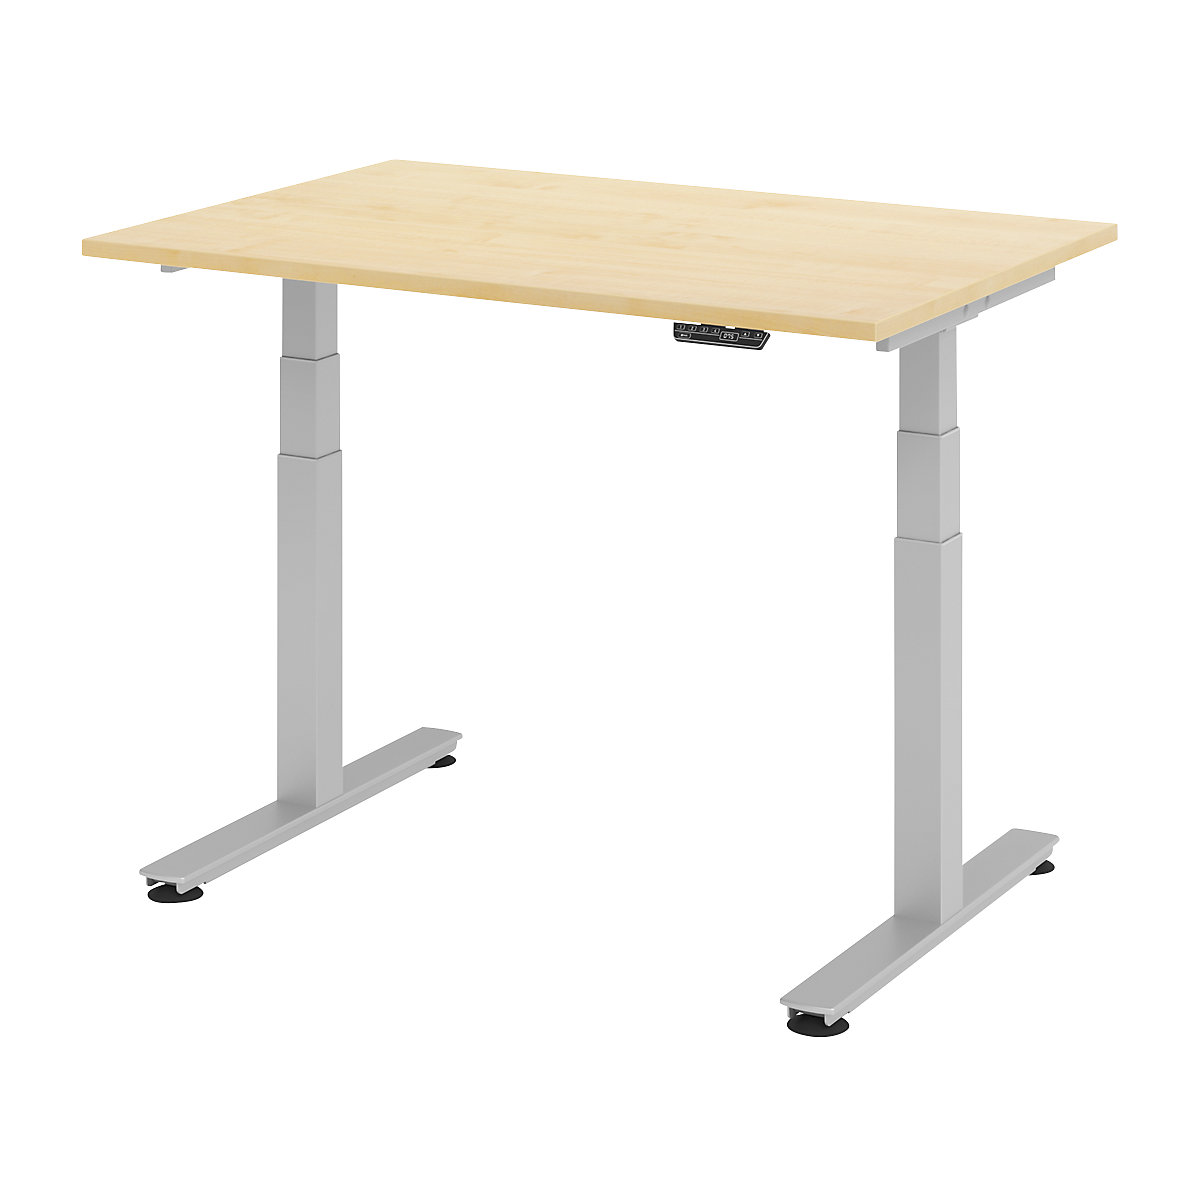 Psací stůl pro práci vestoje, s elektrickým přestavováním výšky UPLINER-2.0